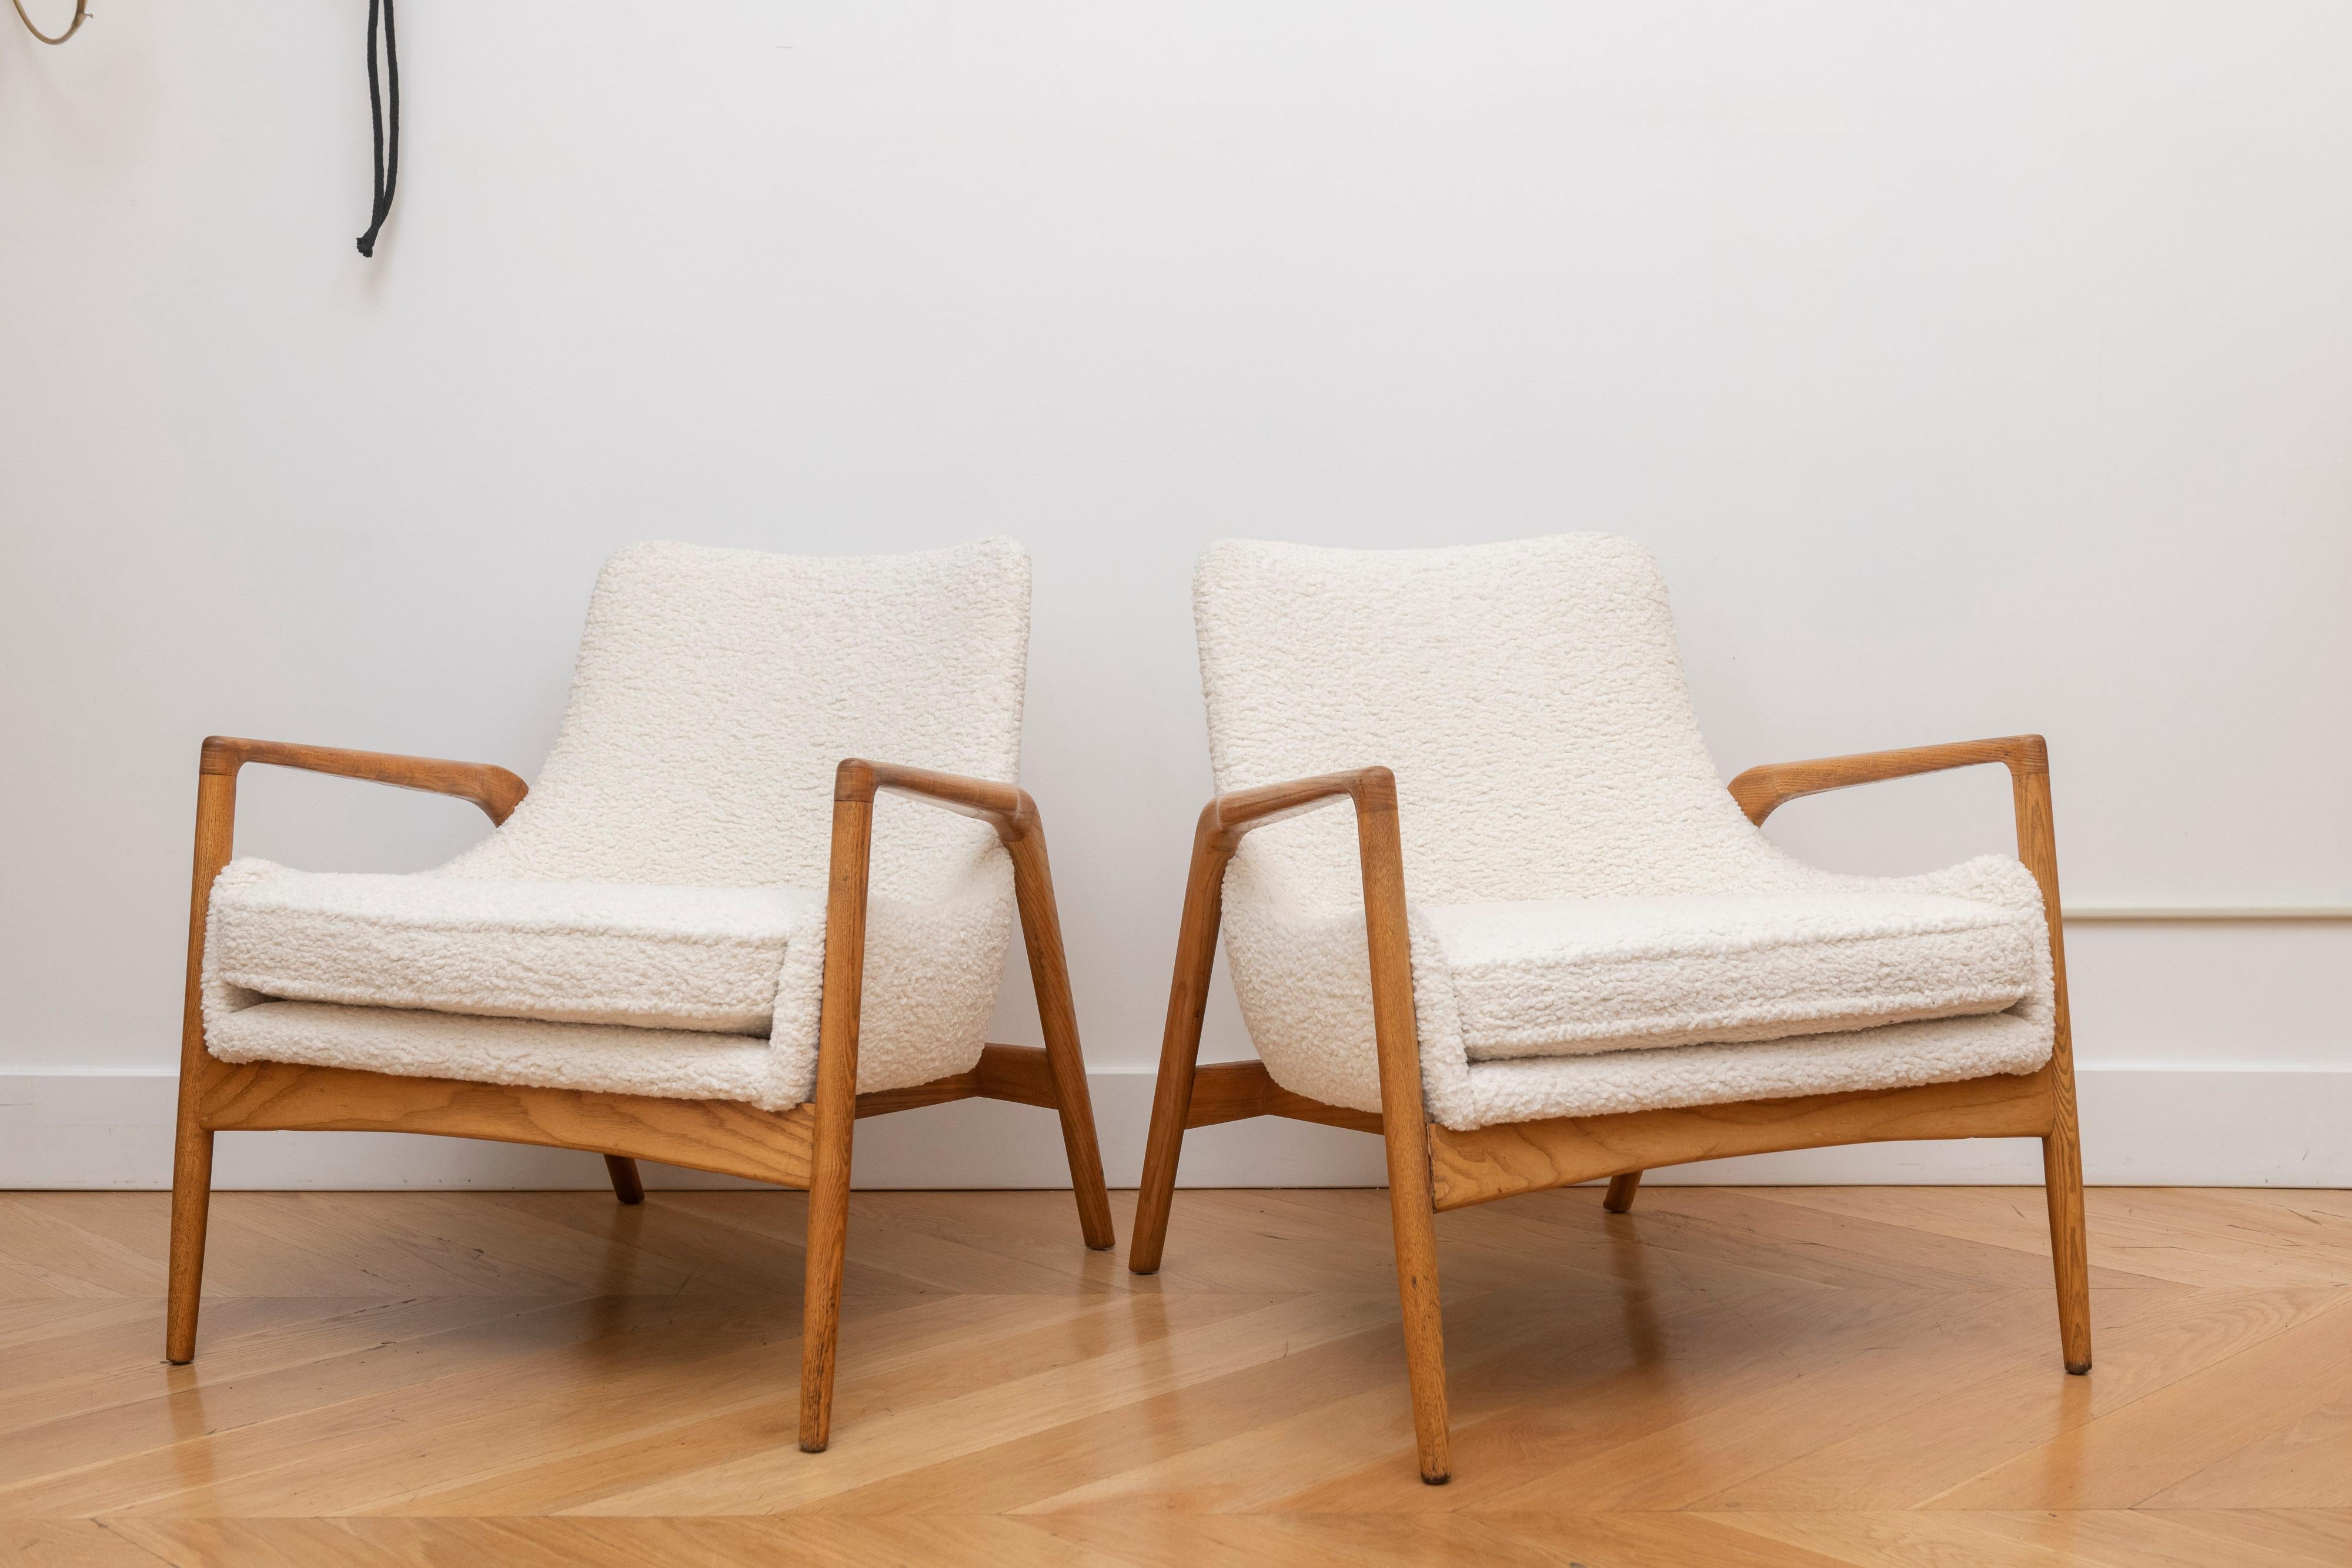 Der klar gezeichnete Rahmen dieses Stuhls steht in schönem Kontrast zu den schrägen Sitzflächen und verleiht dem Werk ein offenes und sehr fotografisches Aussehen. Durch die gut gewählten Proportionen und die hohe Qualität des Designs ist der Seal